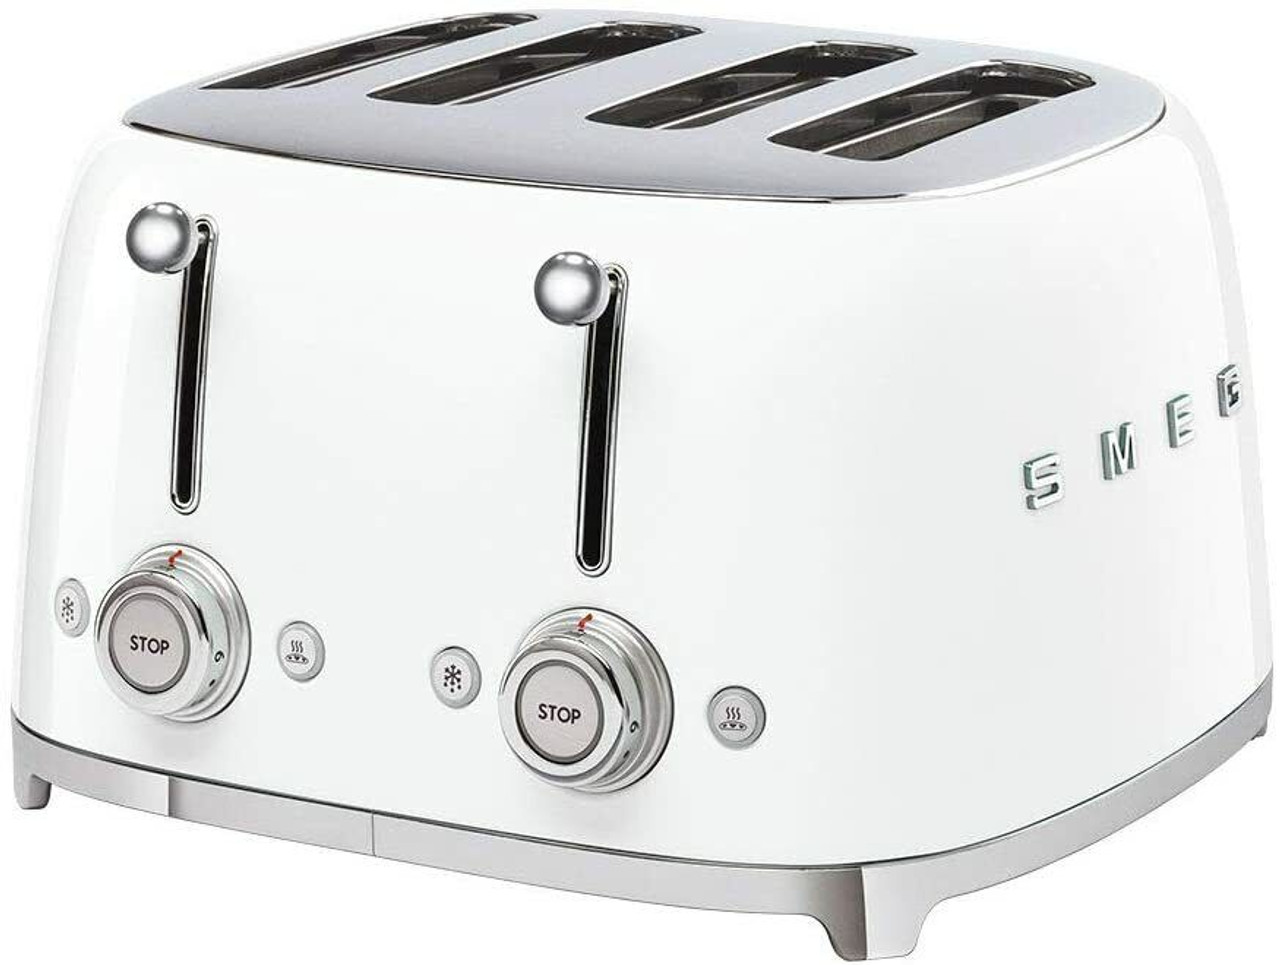 Smeg 2-Slice Toaster  Smeg, Kettle and toaster, Retro toaster